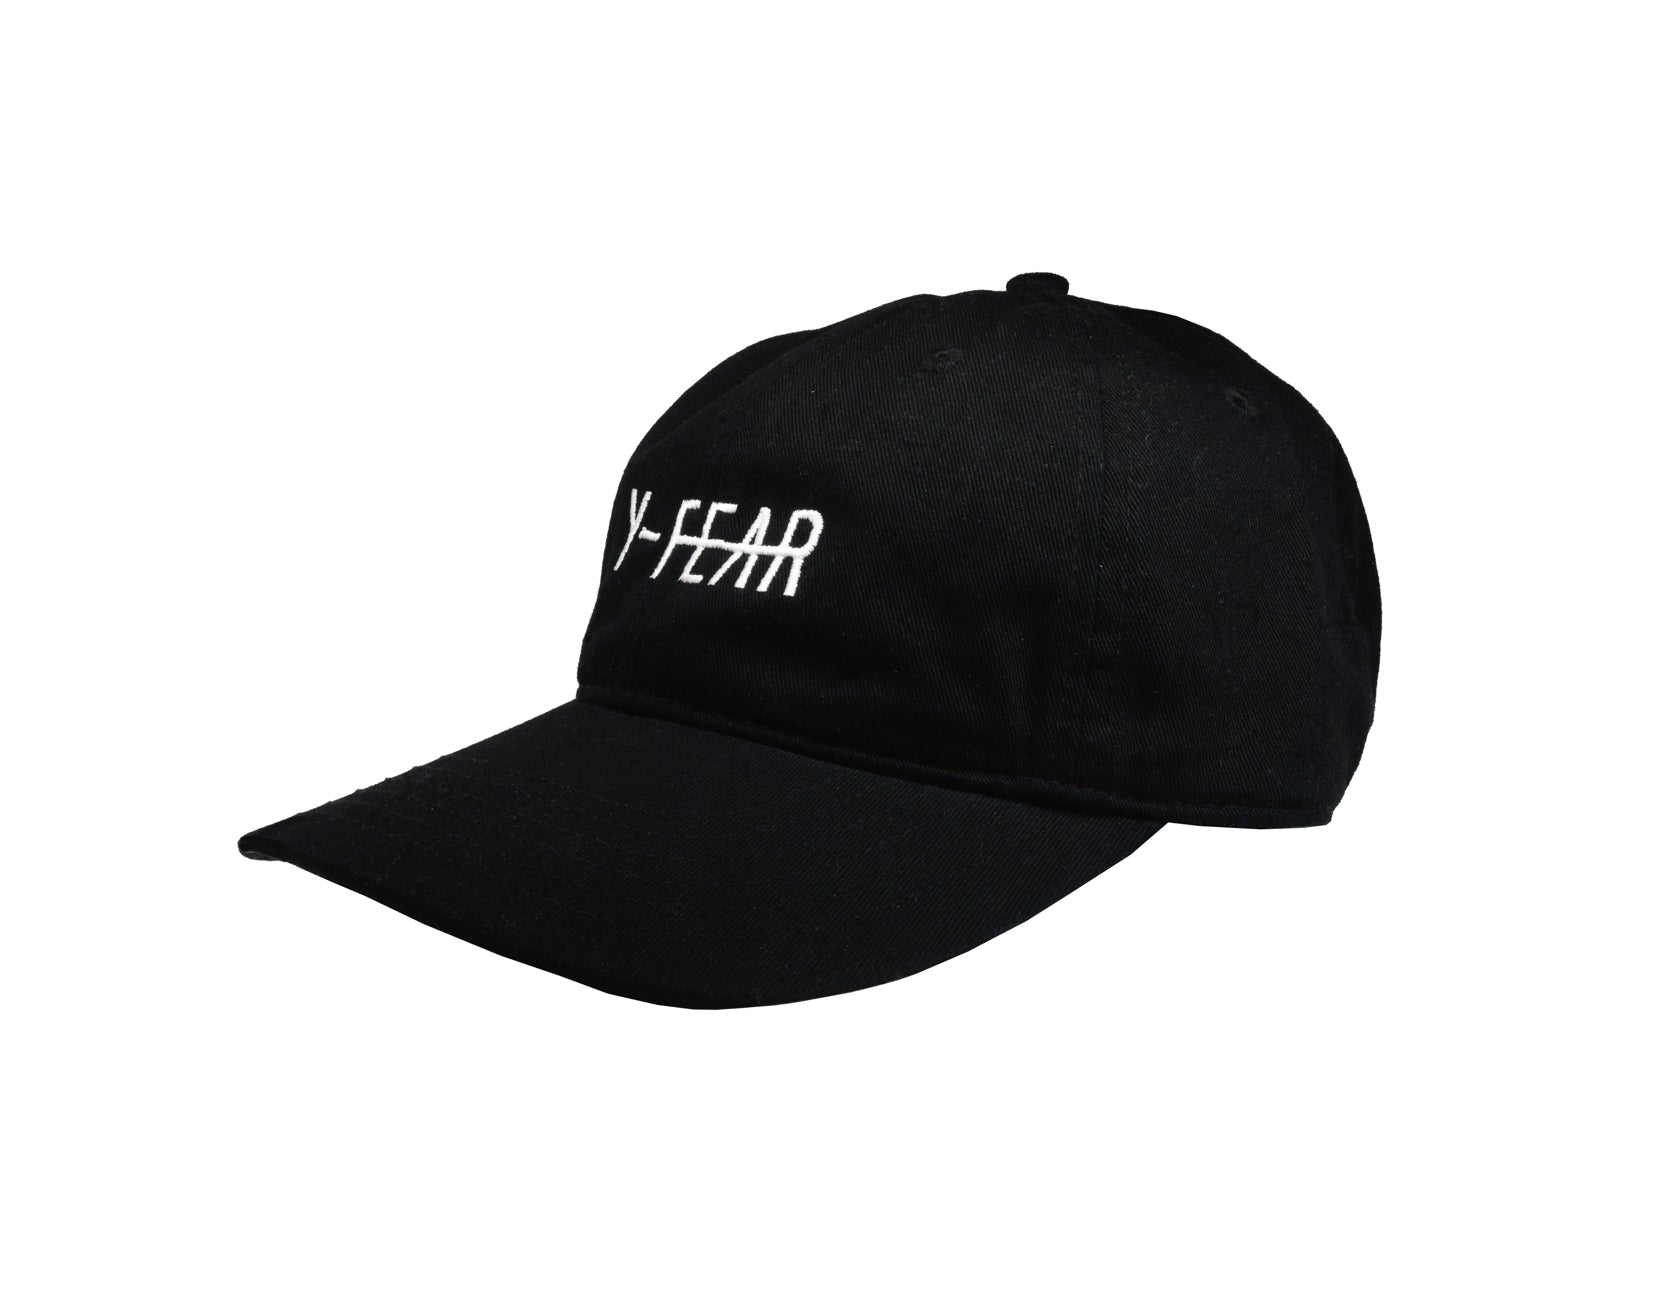 Y-FEAR Logo Dad Hat